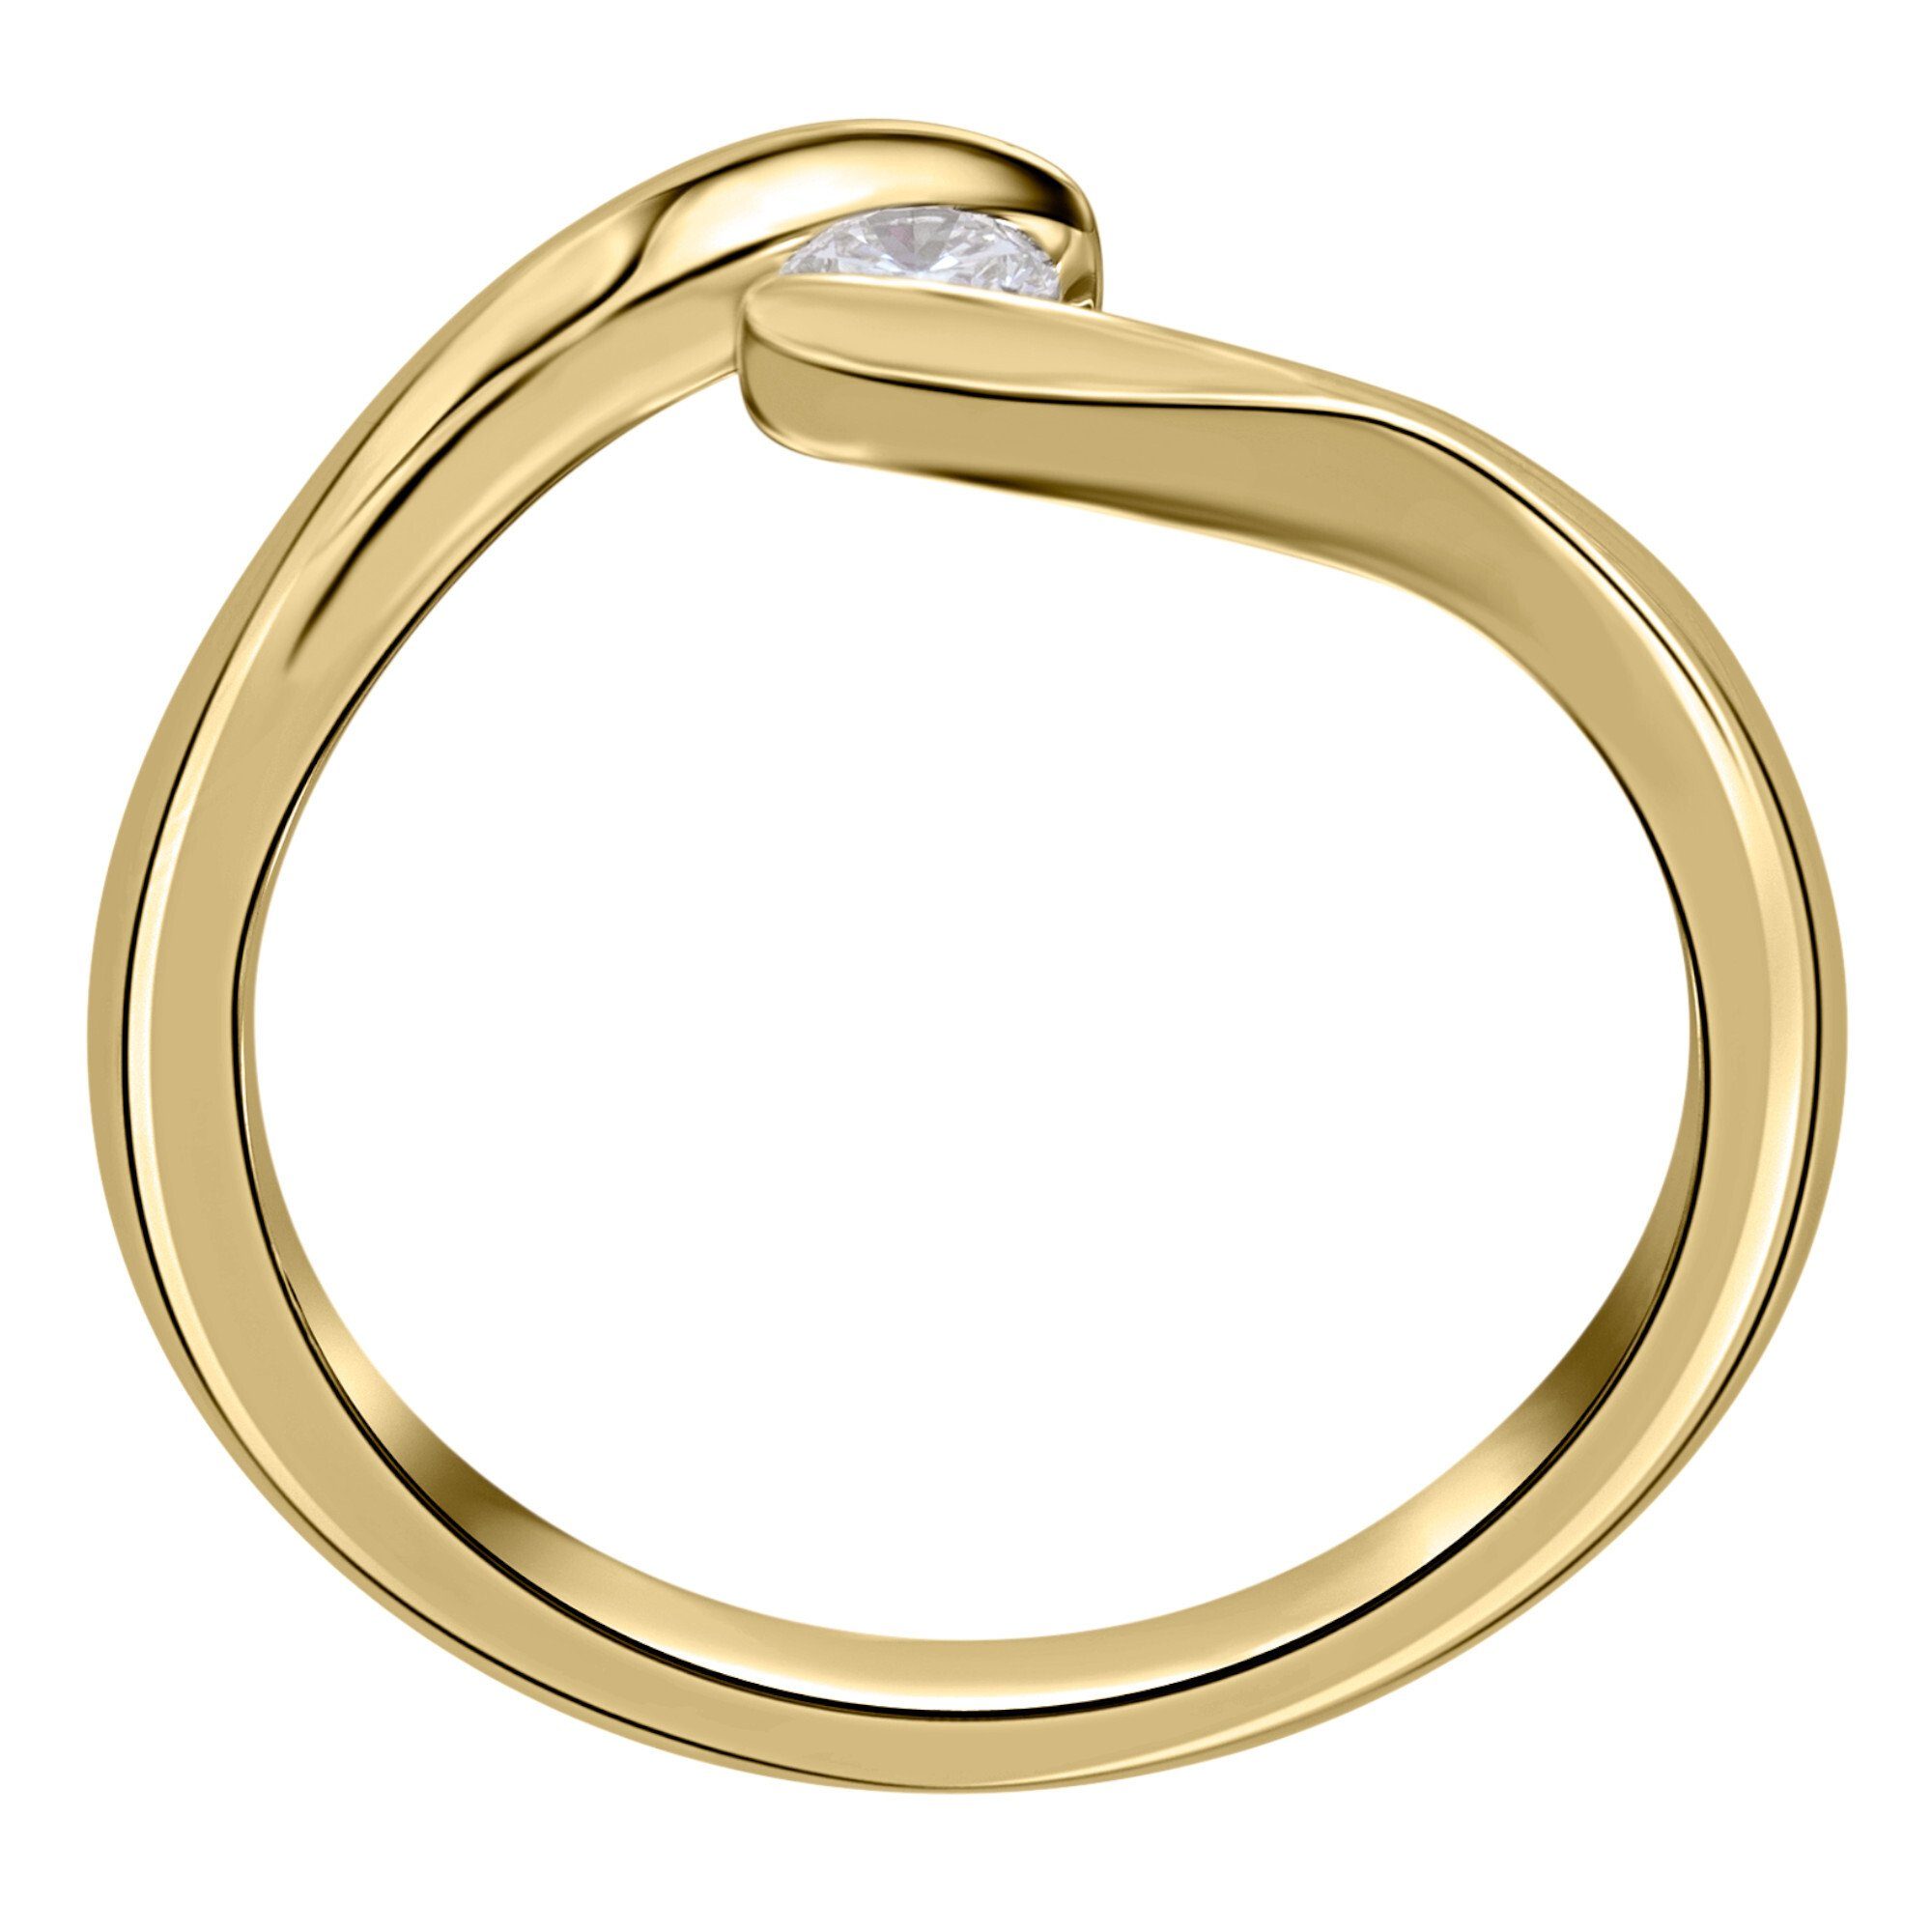 Spannfassung Damen ONE aus ct 750 Brillant 0,20 ELEMENT Diamant Ring Schmuck Spannfassung Gold Gelbgold, Diamantring